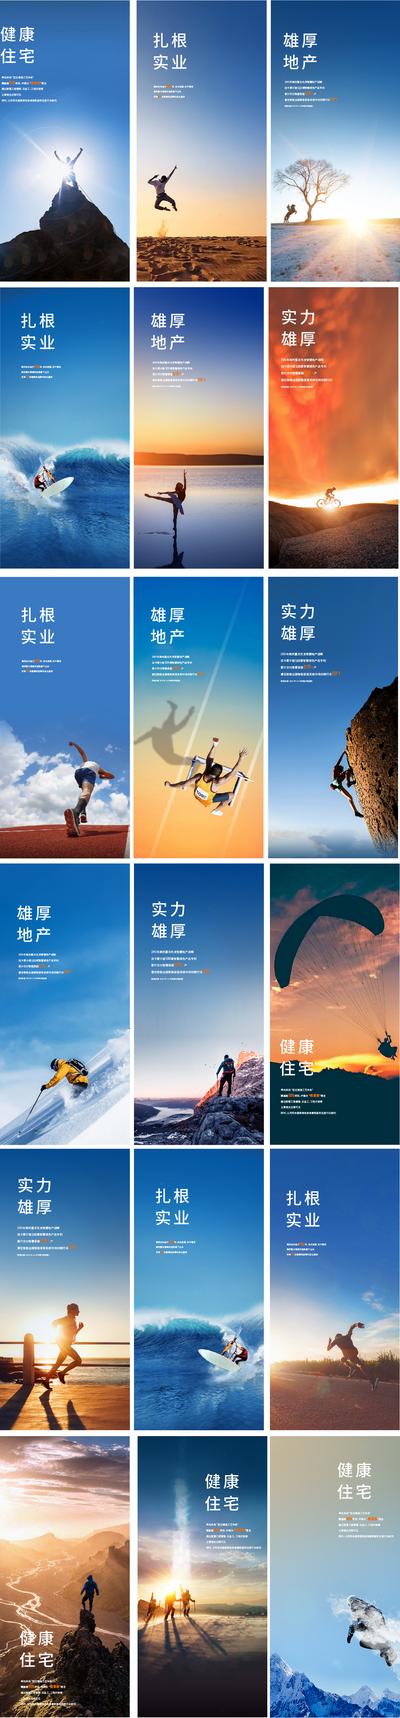 南门网 海报 早安图 地产 冲刺 励志 正能量 激励 风景 蓝天 星空 剪影 光芒 天空 奔跑 系列